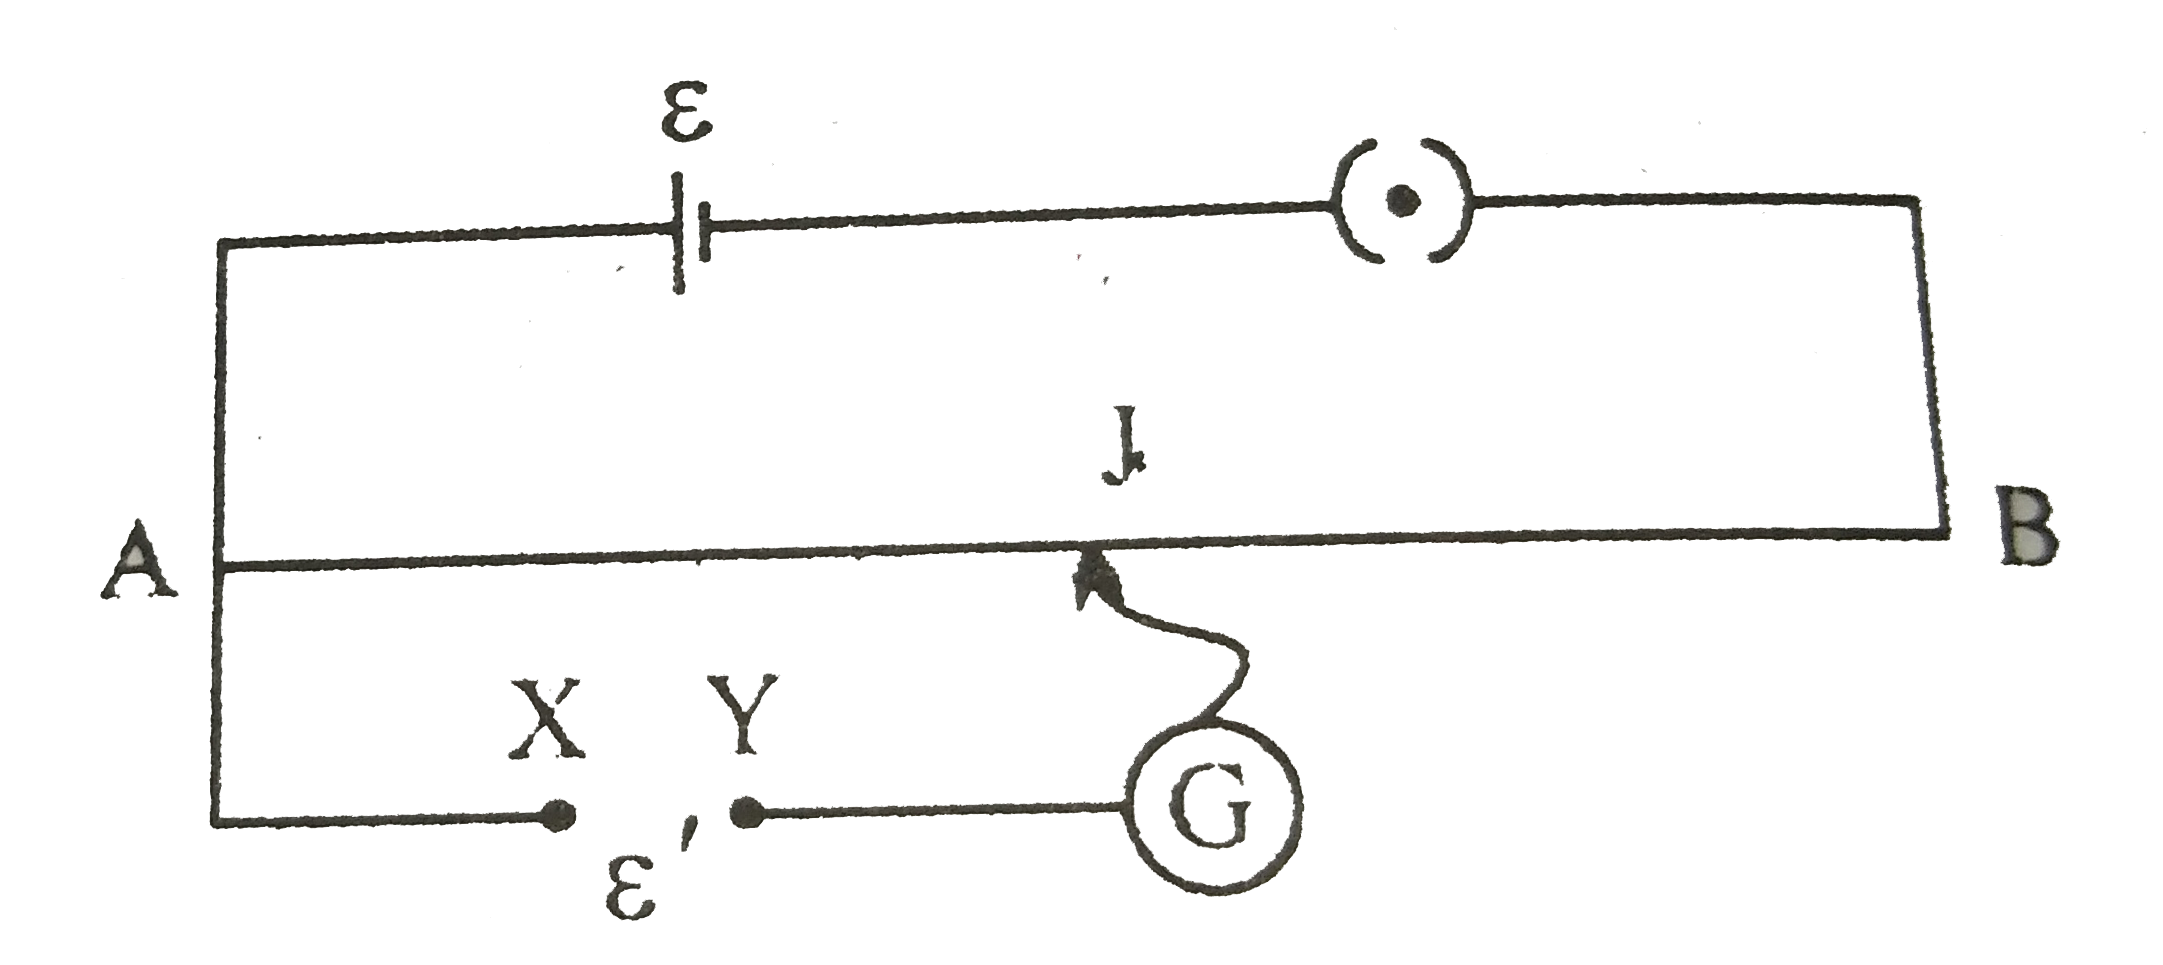 चित्र में एक पोटेशियोमीटर दर्शाया गया है जिसमे एक 2.0V और आंतरिक प्रतिरोध 0.40Omega का कोई सेल, पोटेशियोमीटर के प्रतिरोधक तार AB पर वोल्टता पात बनाए रखता है। कोई मानक सेल जो 1.02V  का अचर विद्युत वाहक बल बनाए रखता है (कुछ mA की बहुत सामान्य धाराओं के लिए) तार की 67.3cm लंबाई पर संतुलन बिंदु देता है। मानक सेल से अति न्यून धारा लेना सुनिश्चित करने के लिए इसके साथ परिपथ में श्रेणी 600kOmega का एक अति उच्च प्रतिरोध इसके साथ संबद्ध किया जाता है, जिसके संतुलन बिंदु प्राप्त होने के निकट लघुपथित कर दिया जाता है। इसके बाद मानक सेल को किसी अज्ञात विद्युत वाहक बल epsilon के सेल से प्रतिस्थापित कर दिया जाता है जिससे संतुलन बिंदु तार की 82.3cm लंबाई पर प्राप्त होता है।      600kOmega के उच्च प्रतिरोध का क्या प्रयोजन है?